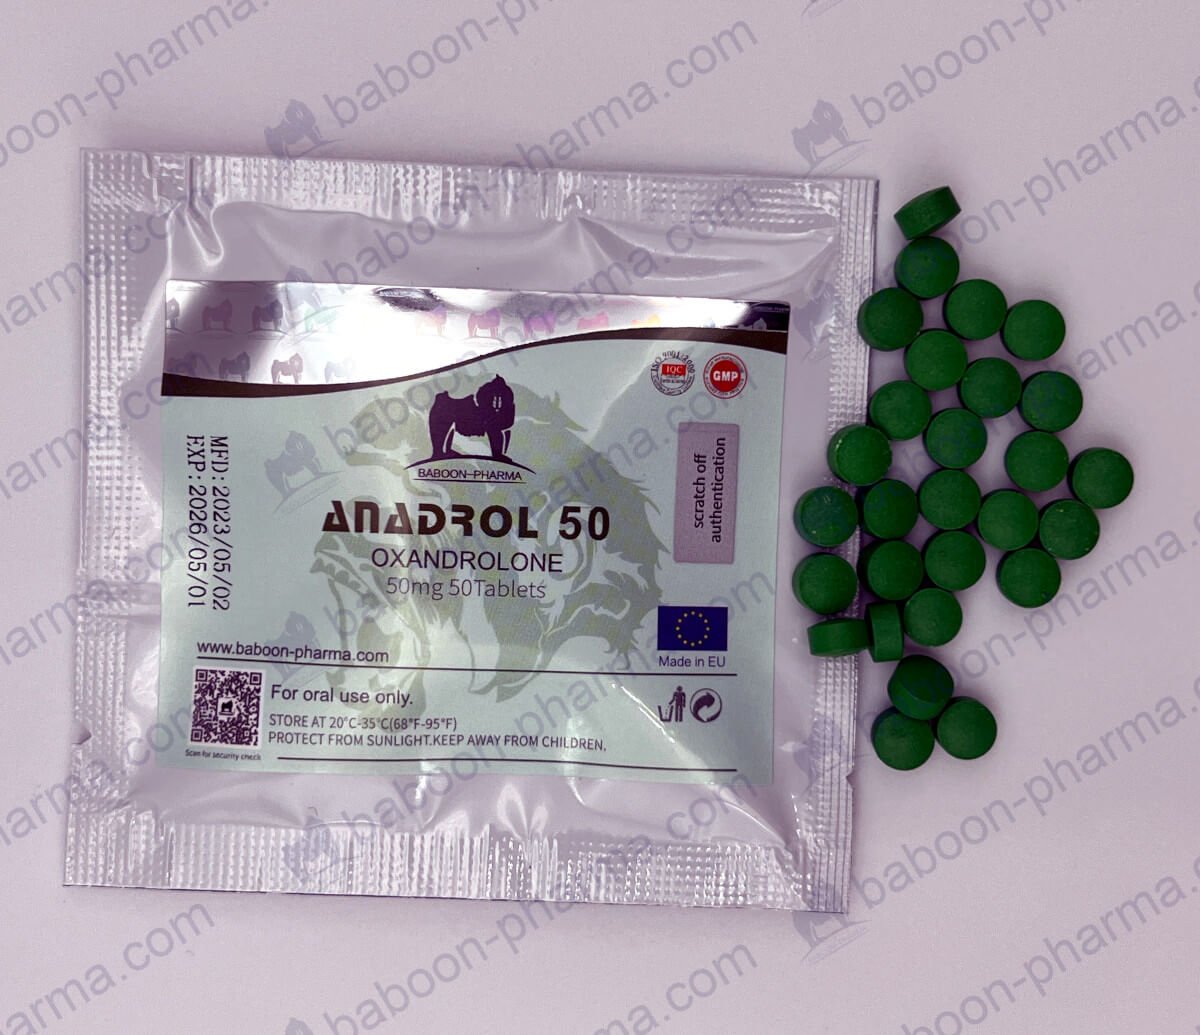 Pavián-Pharma-Oral_tablests_Anadrol_50_1